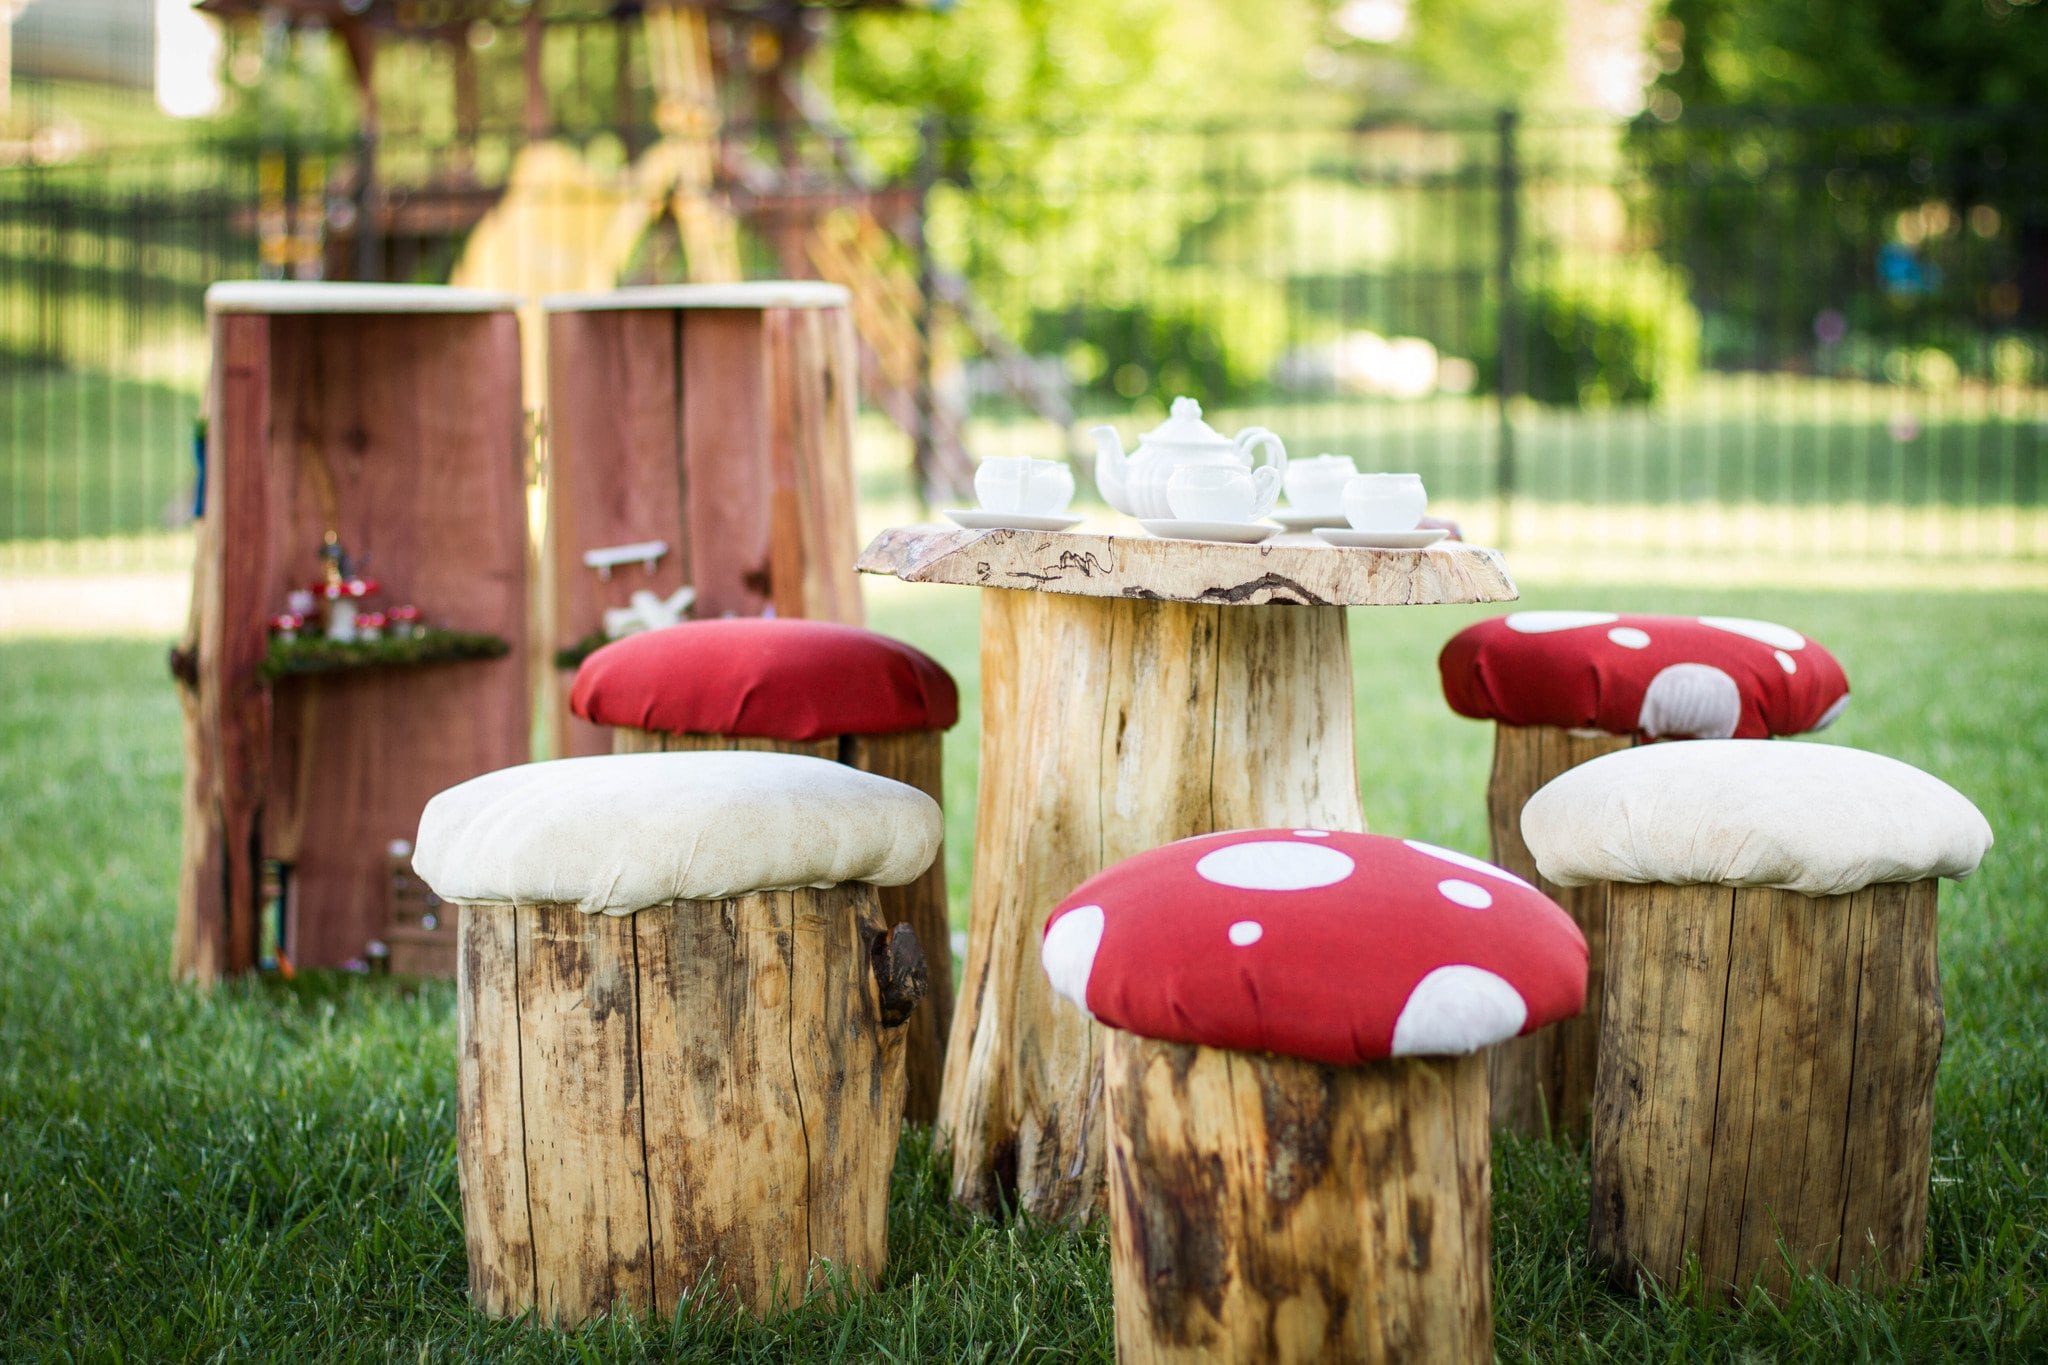 Tree Stump Mushroom Table Set for Kids